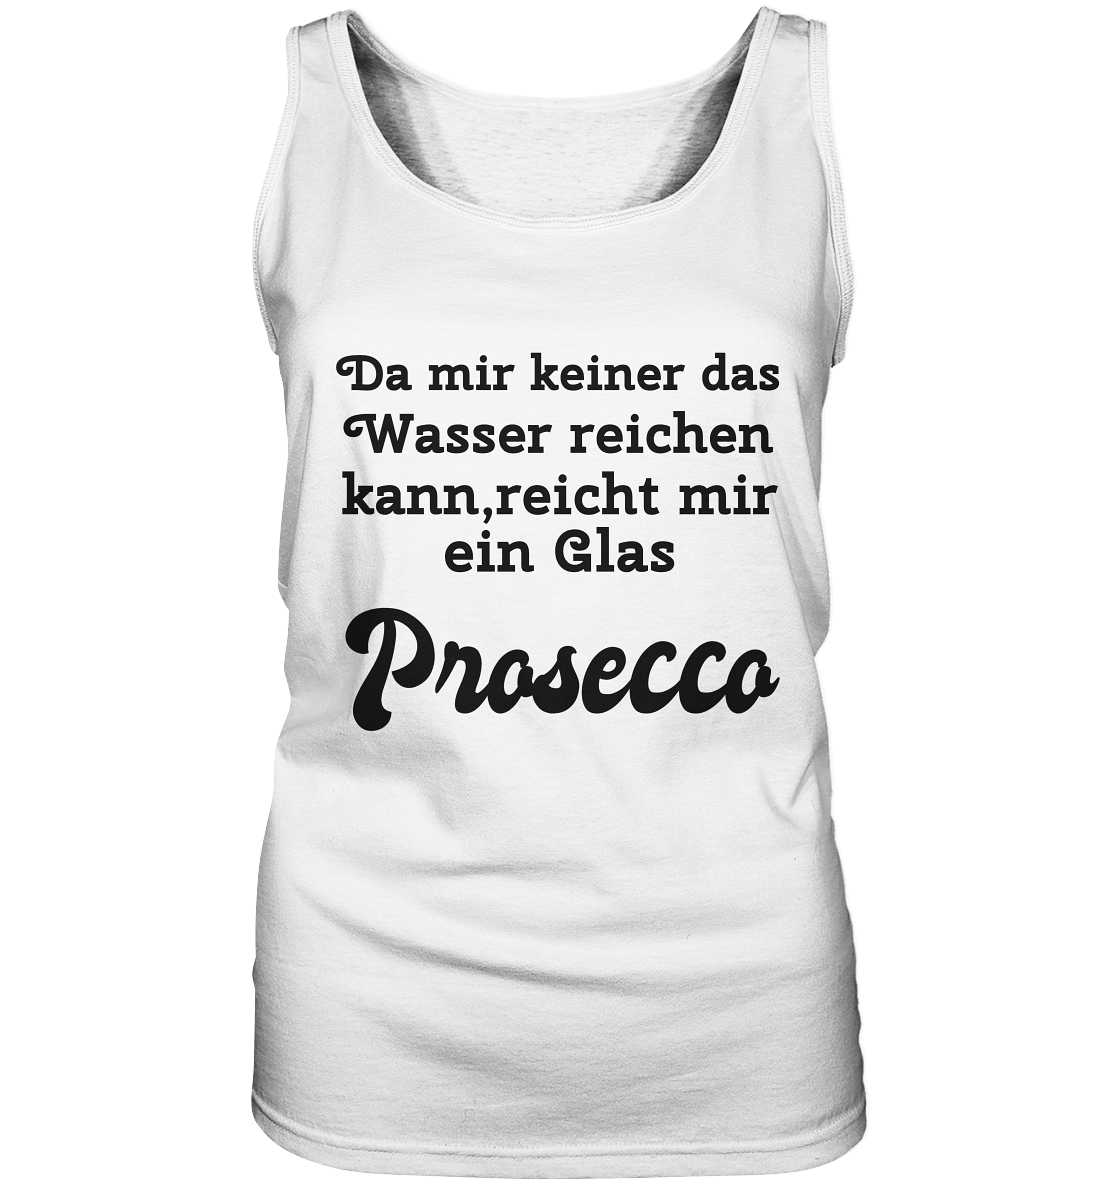 Da mir keiner das Wasser reichen kann, reicht mir ein Glas Prosecco -Designe Munich Palms  - Ladies Tank-Top